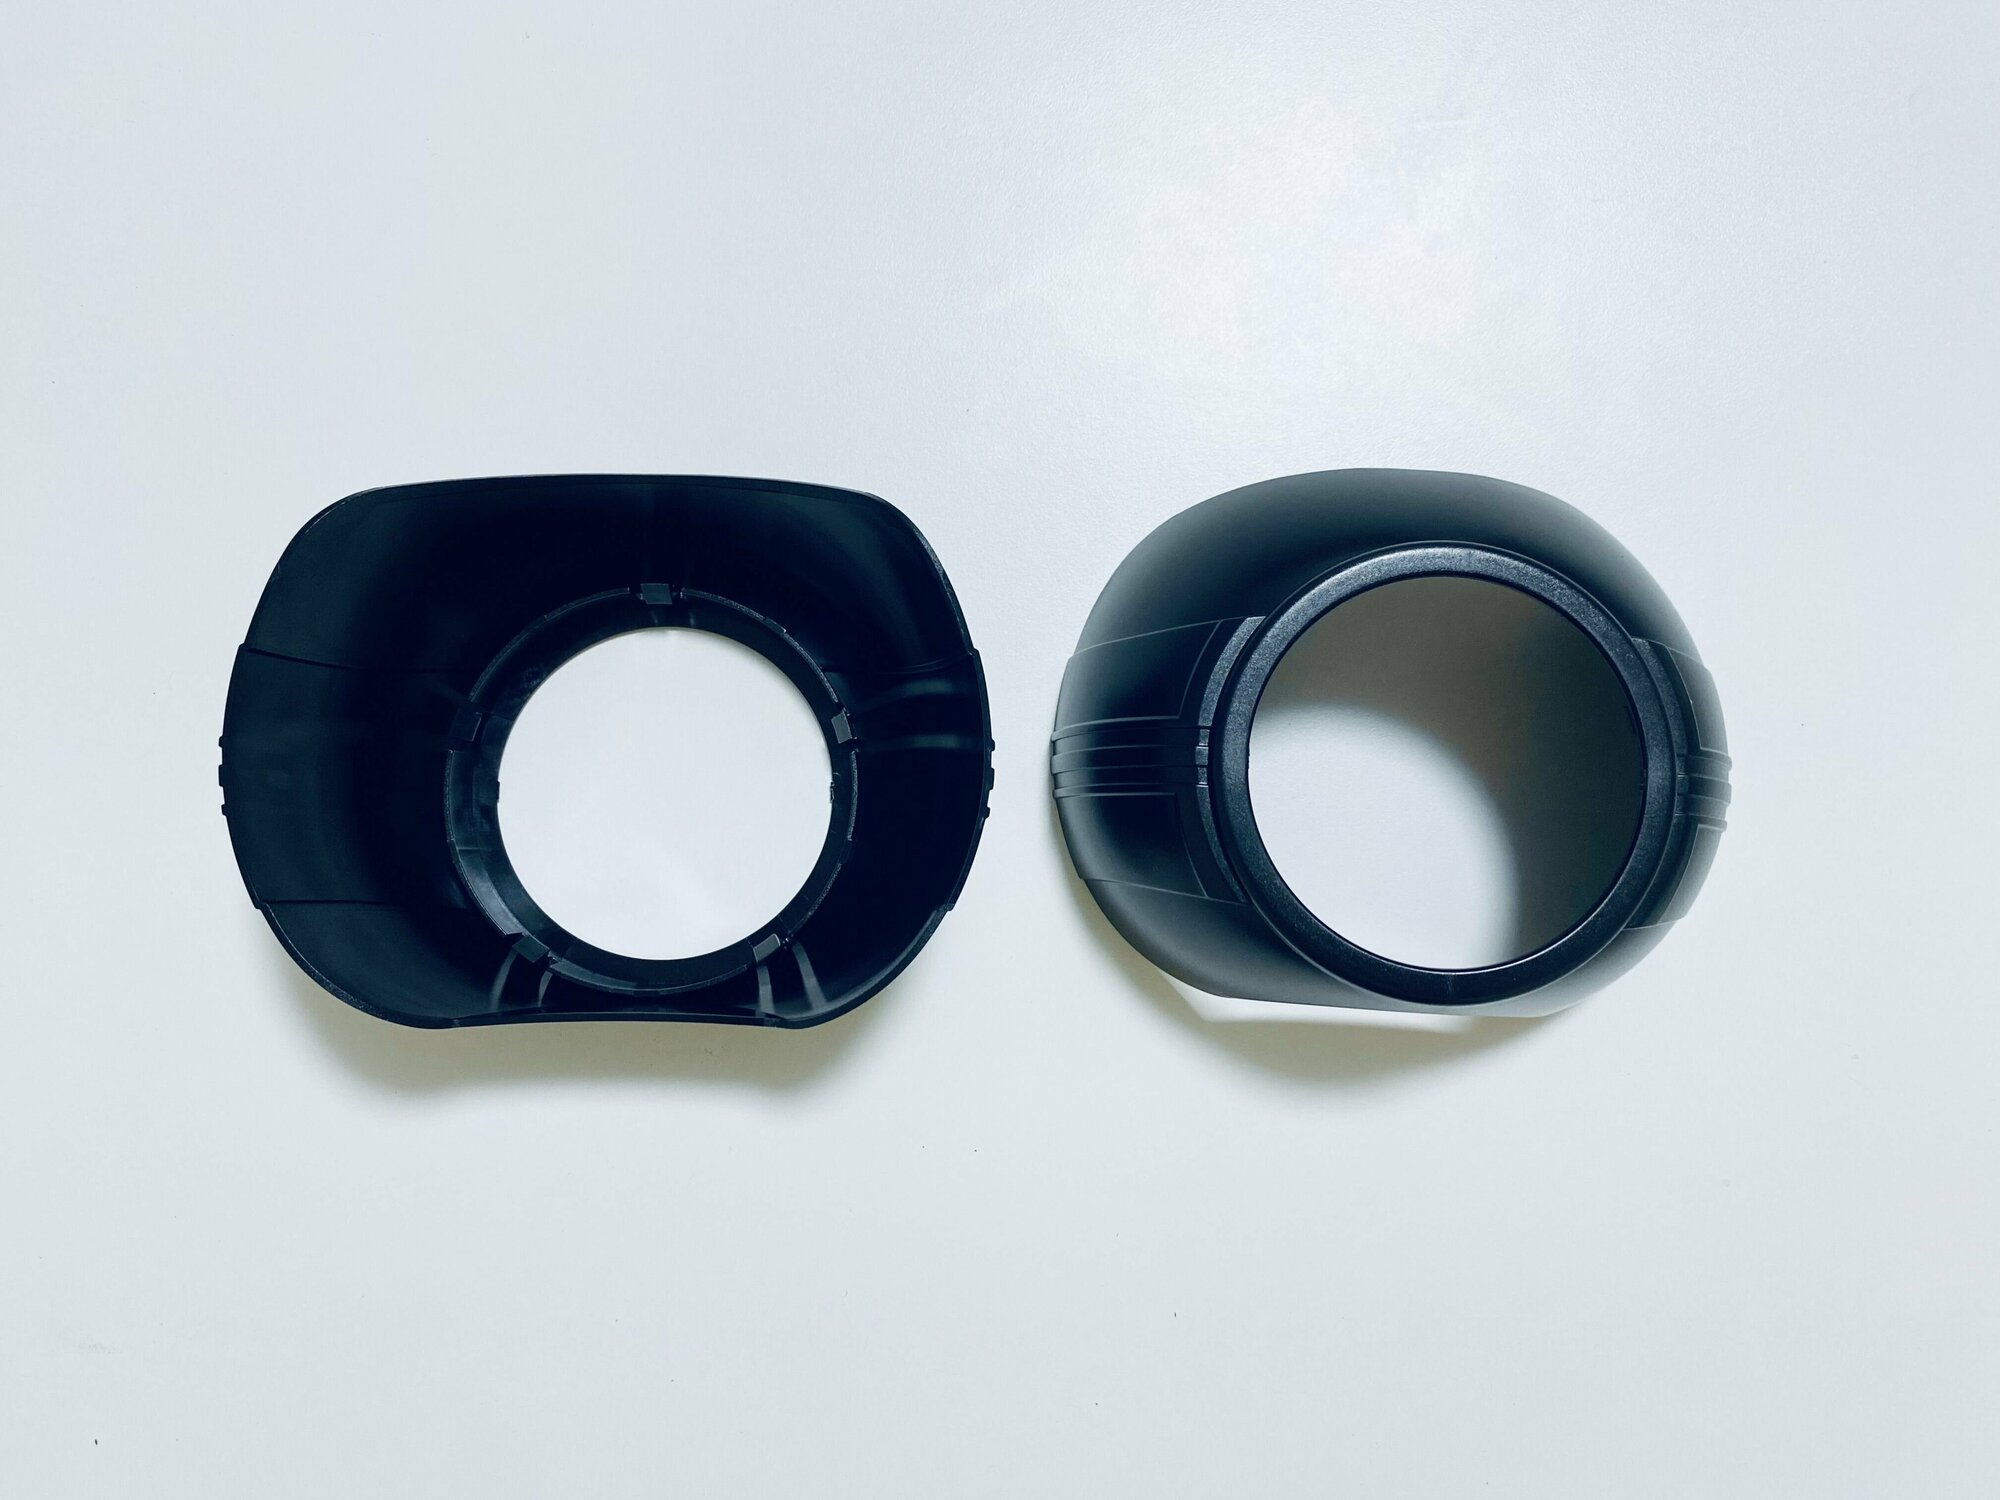 Декоративные бленды (маски) №109B для линз 2.8" и 3.0", цвет черный, комплект 2 шт